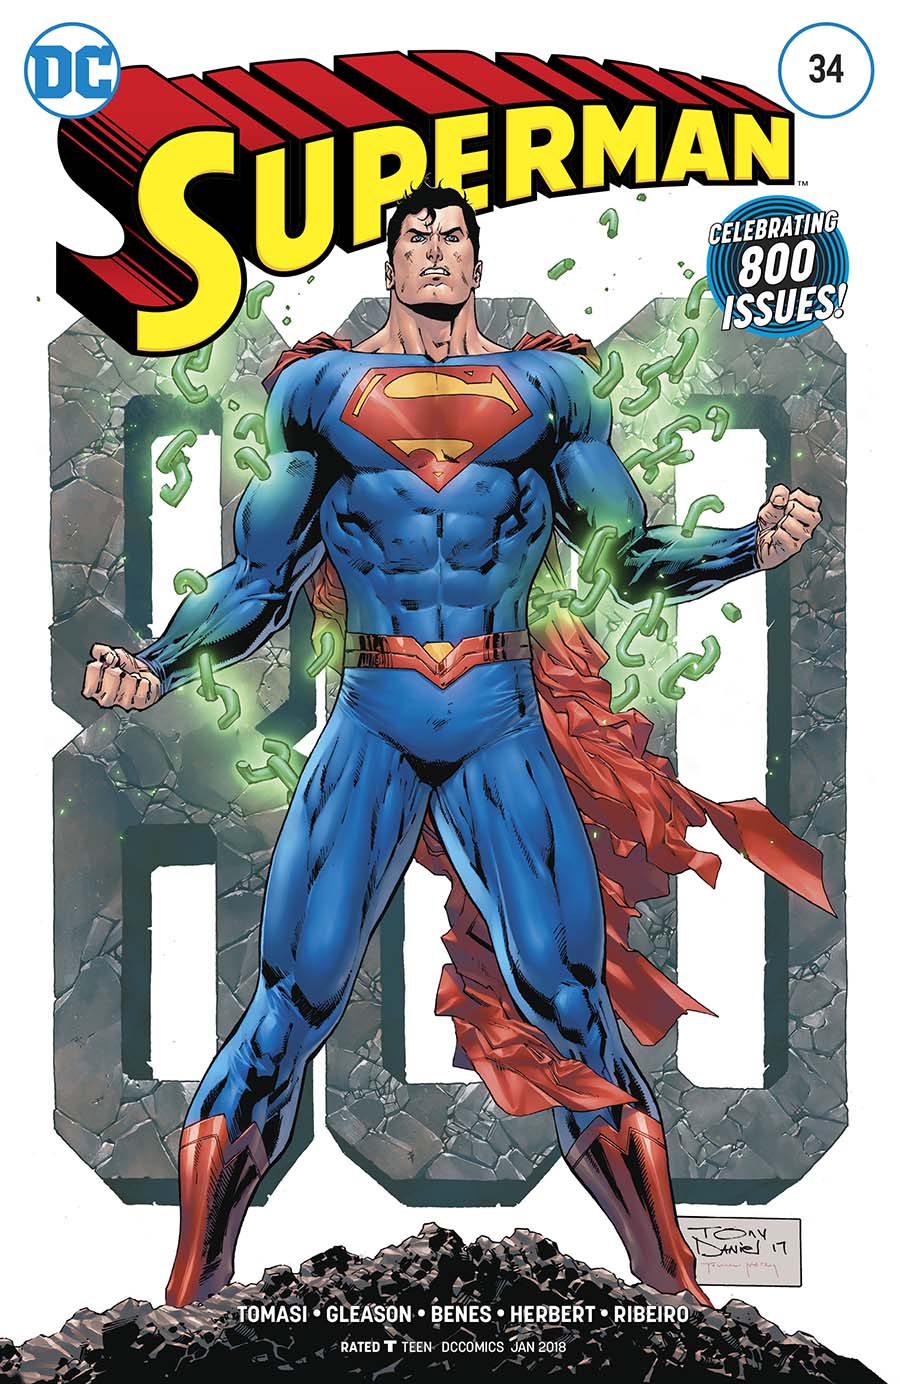 Superman Vol 5 #34 Cover B Variant Tony S Daniel Superman 800 Cover